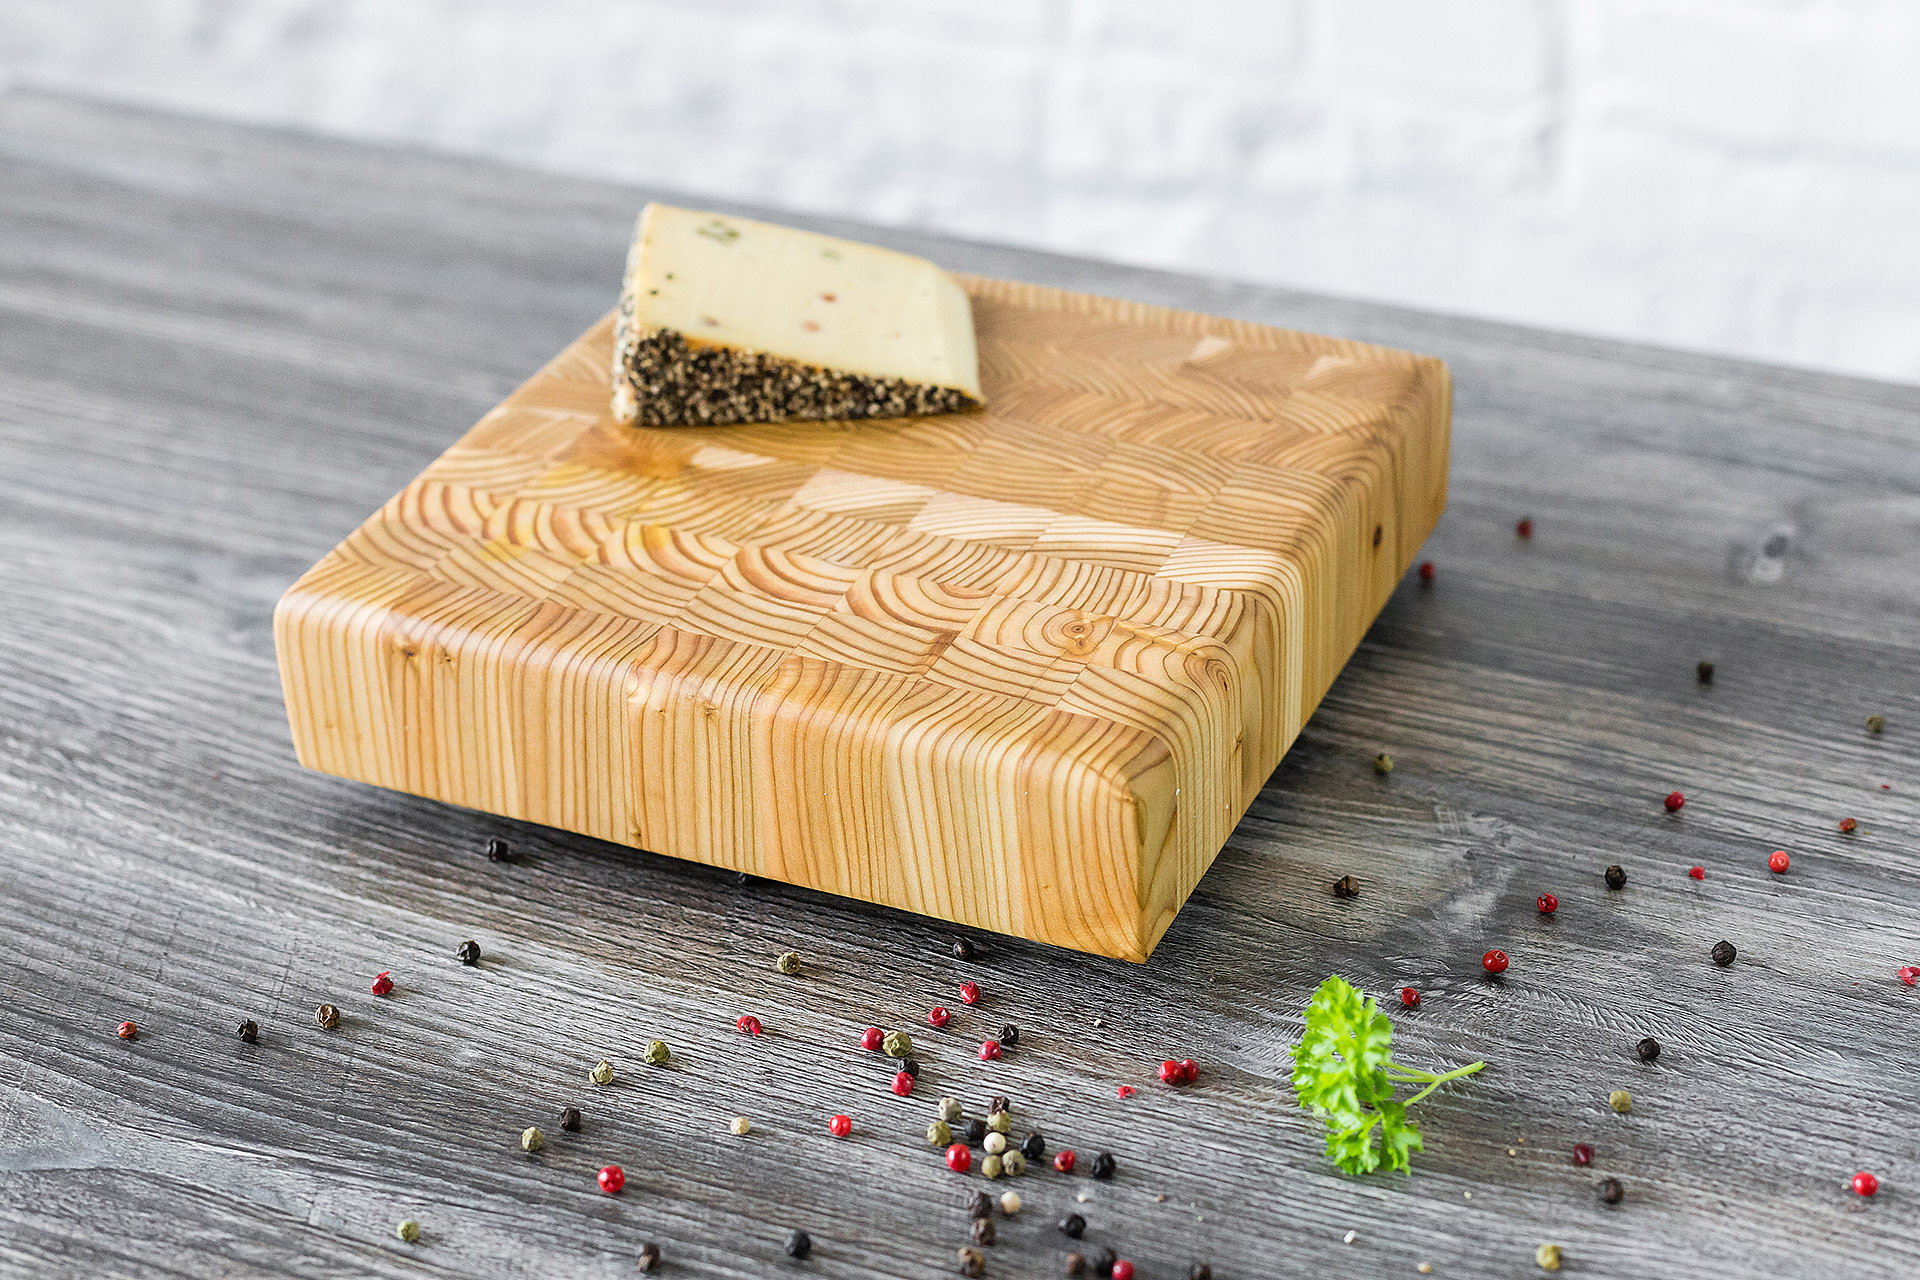 Square cheese board